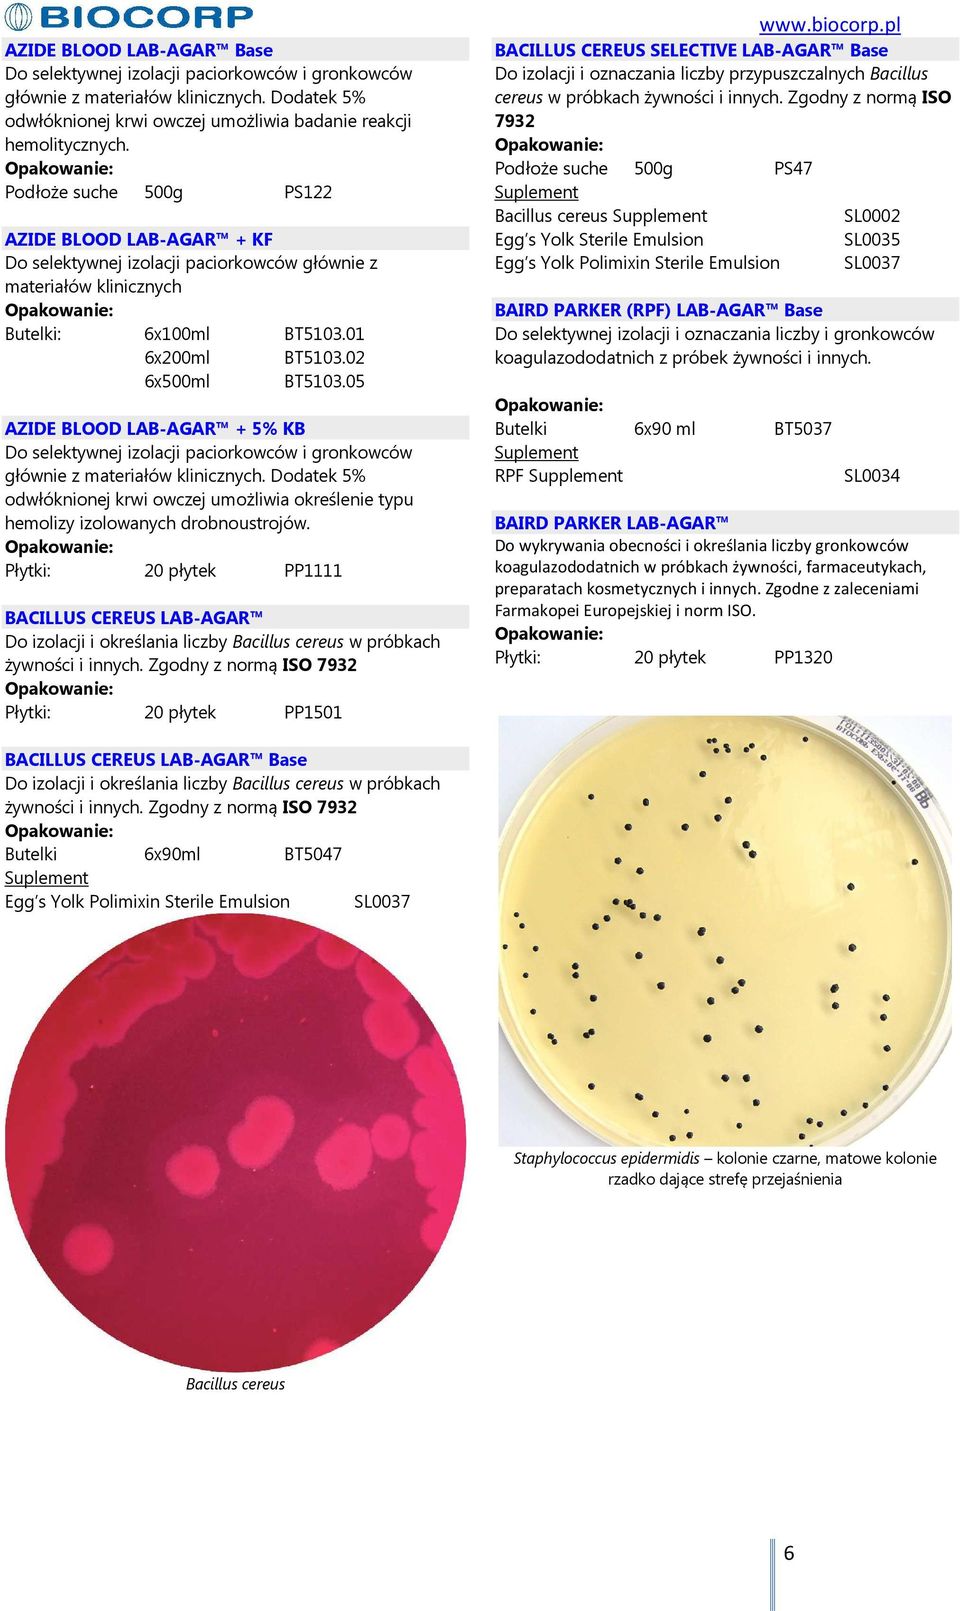 05 AZIDE BLOOD LAB-AGAR + 5% KB Do selektywnej izolacji paciorkowców i gronkowców głównie z materiałów klinicznych.